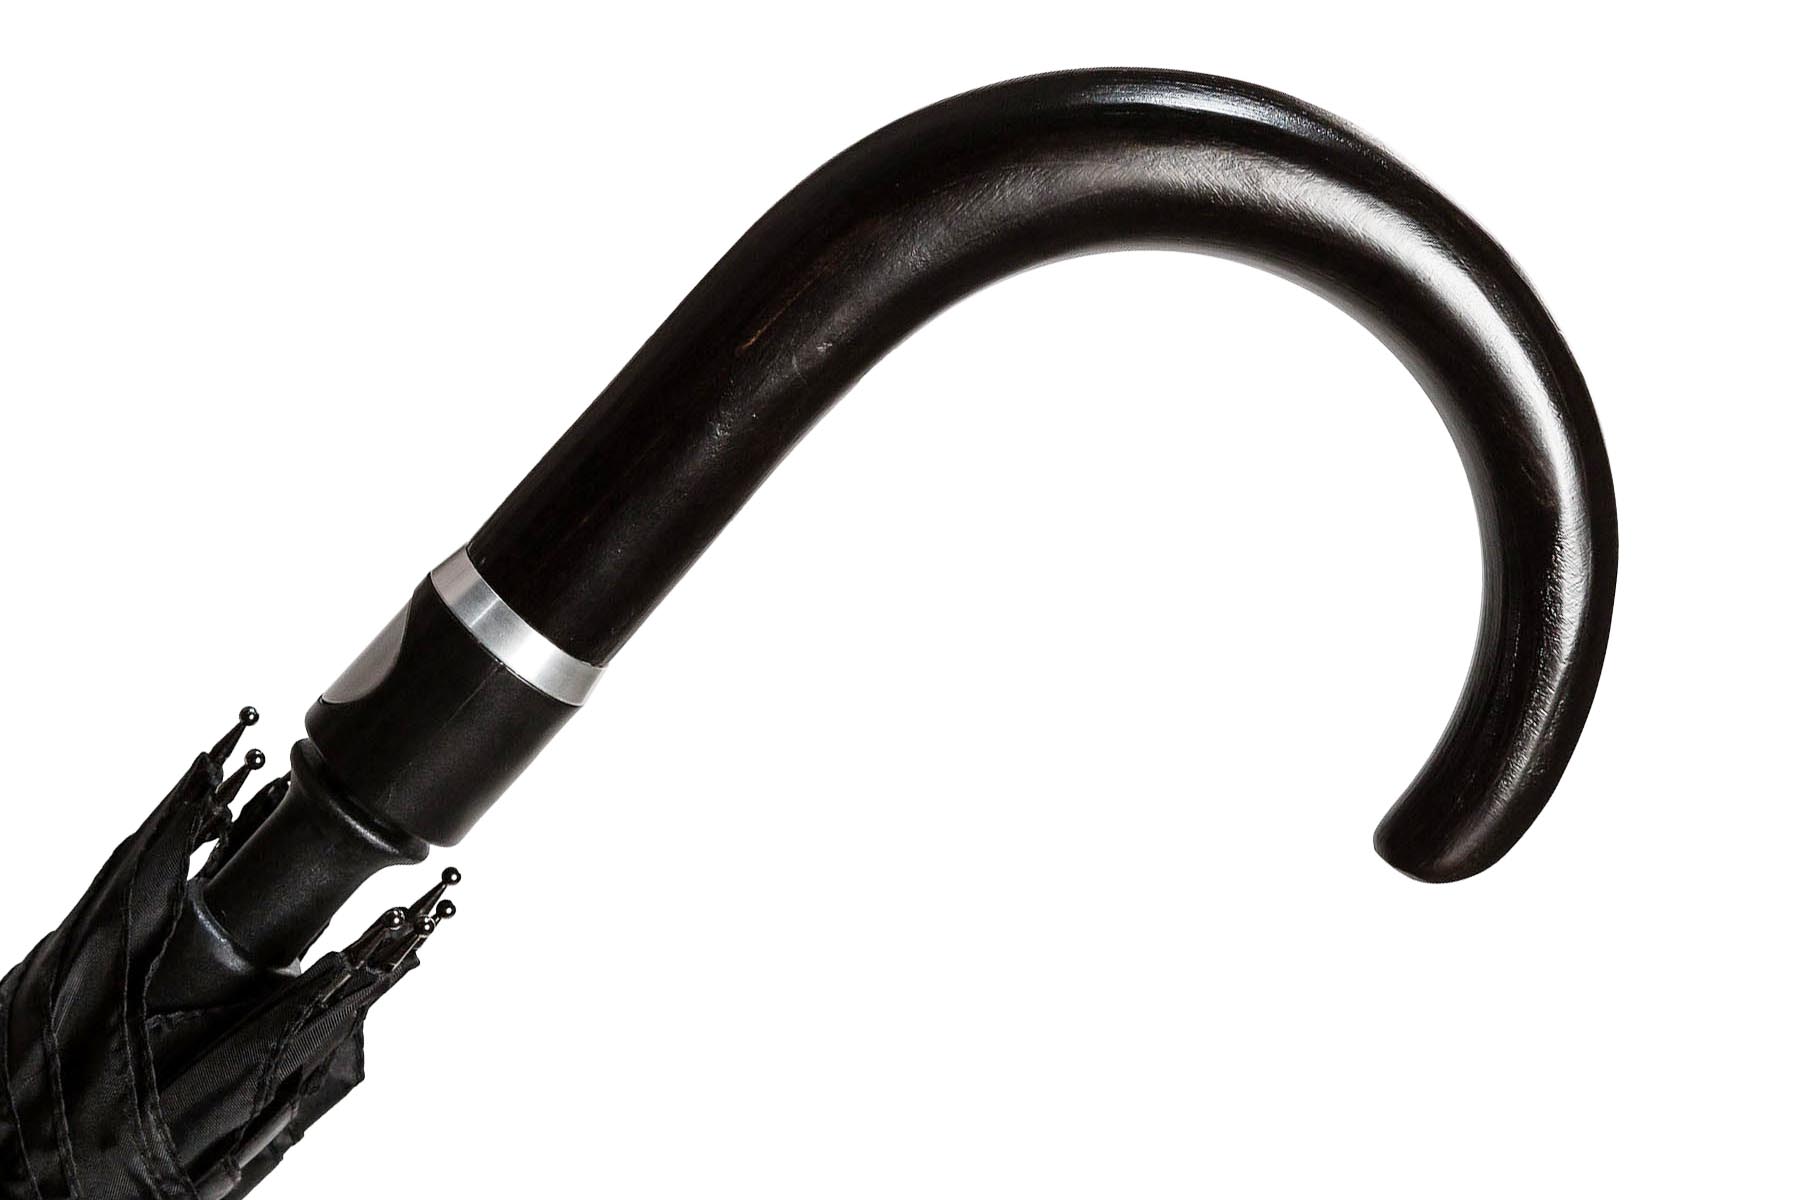 https://www.dragonsports.eu/441352-verylarge_default/cane-resistance-umbrella-self-defense-curved-handle.jpg